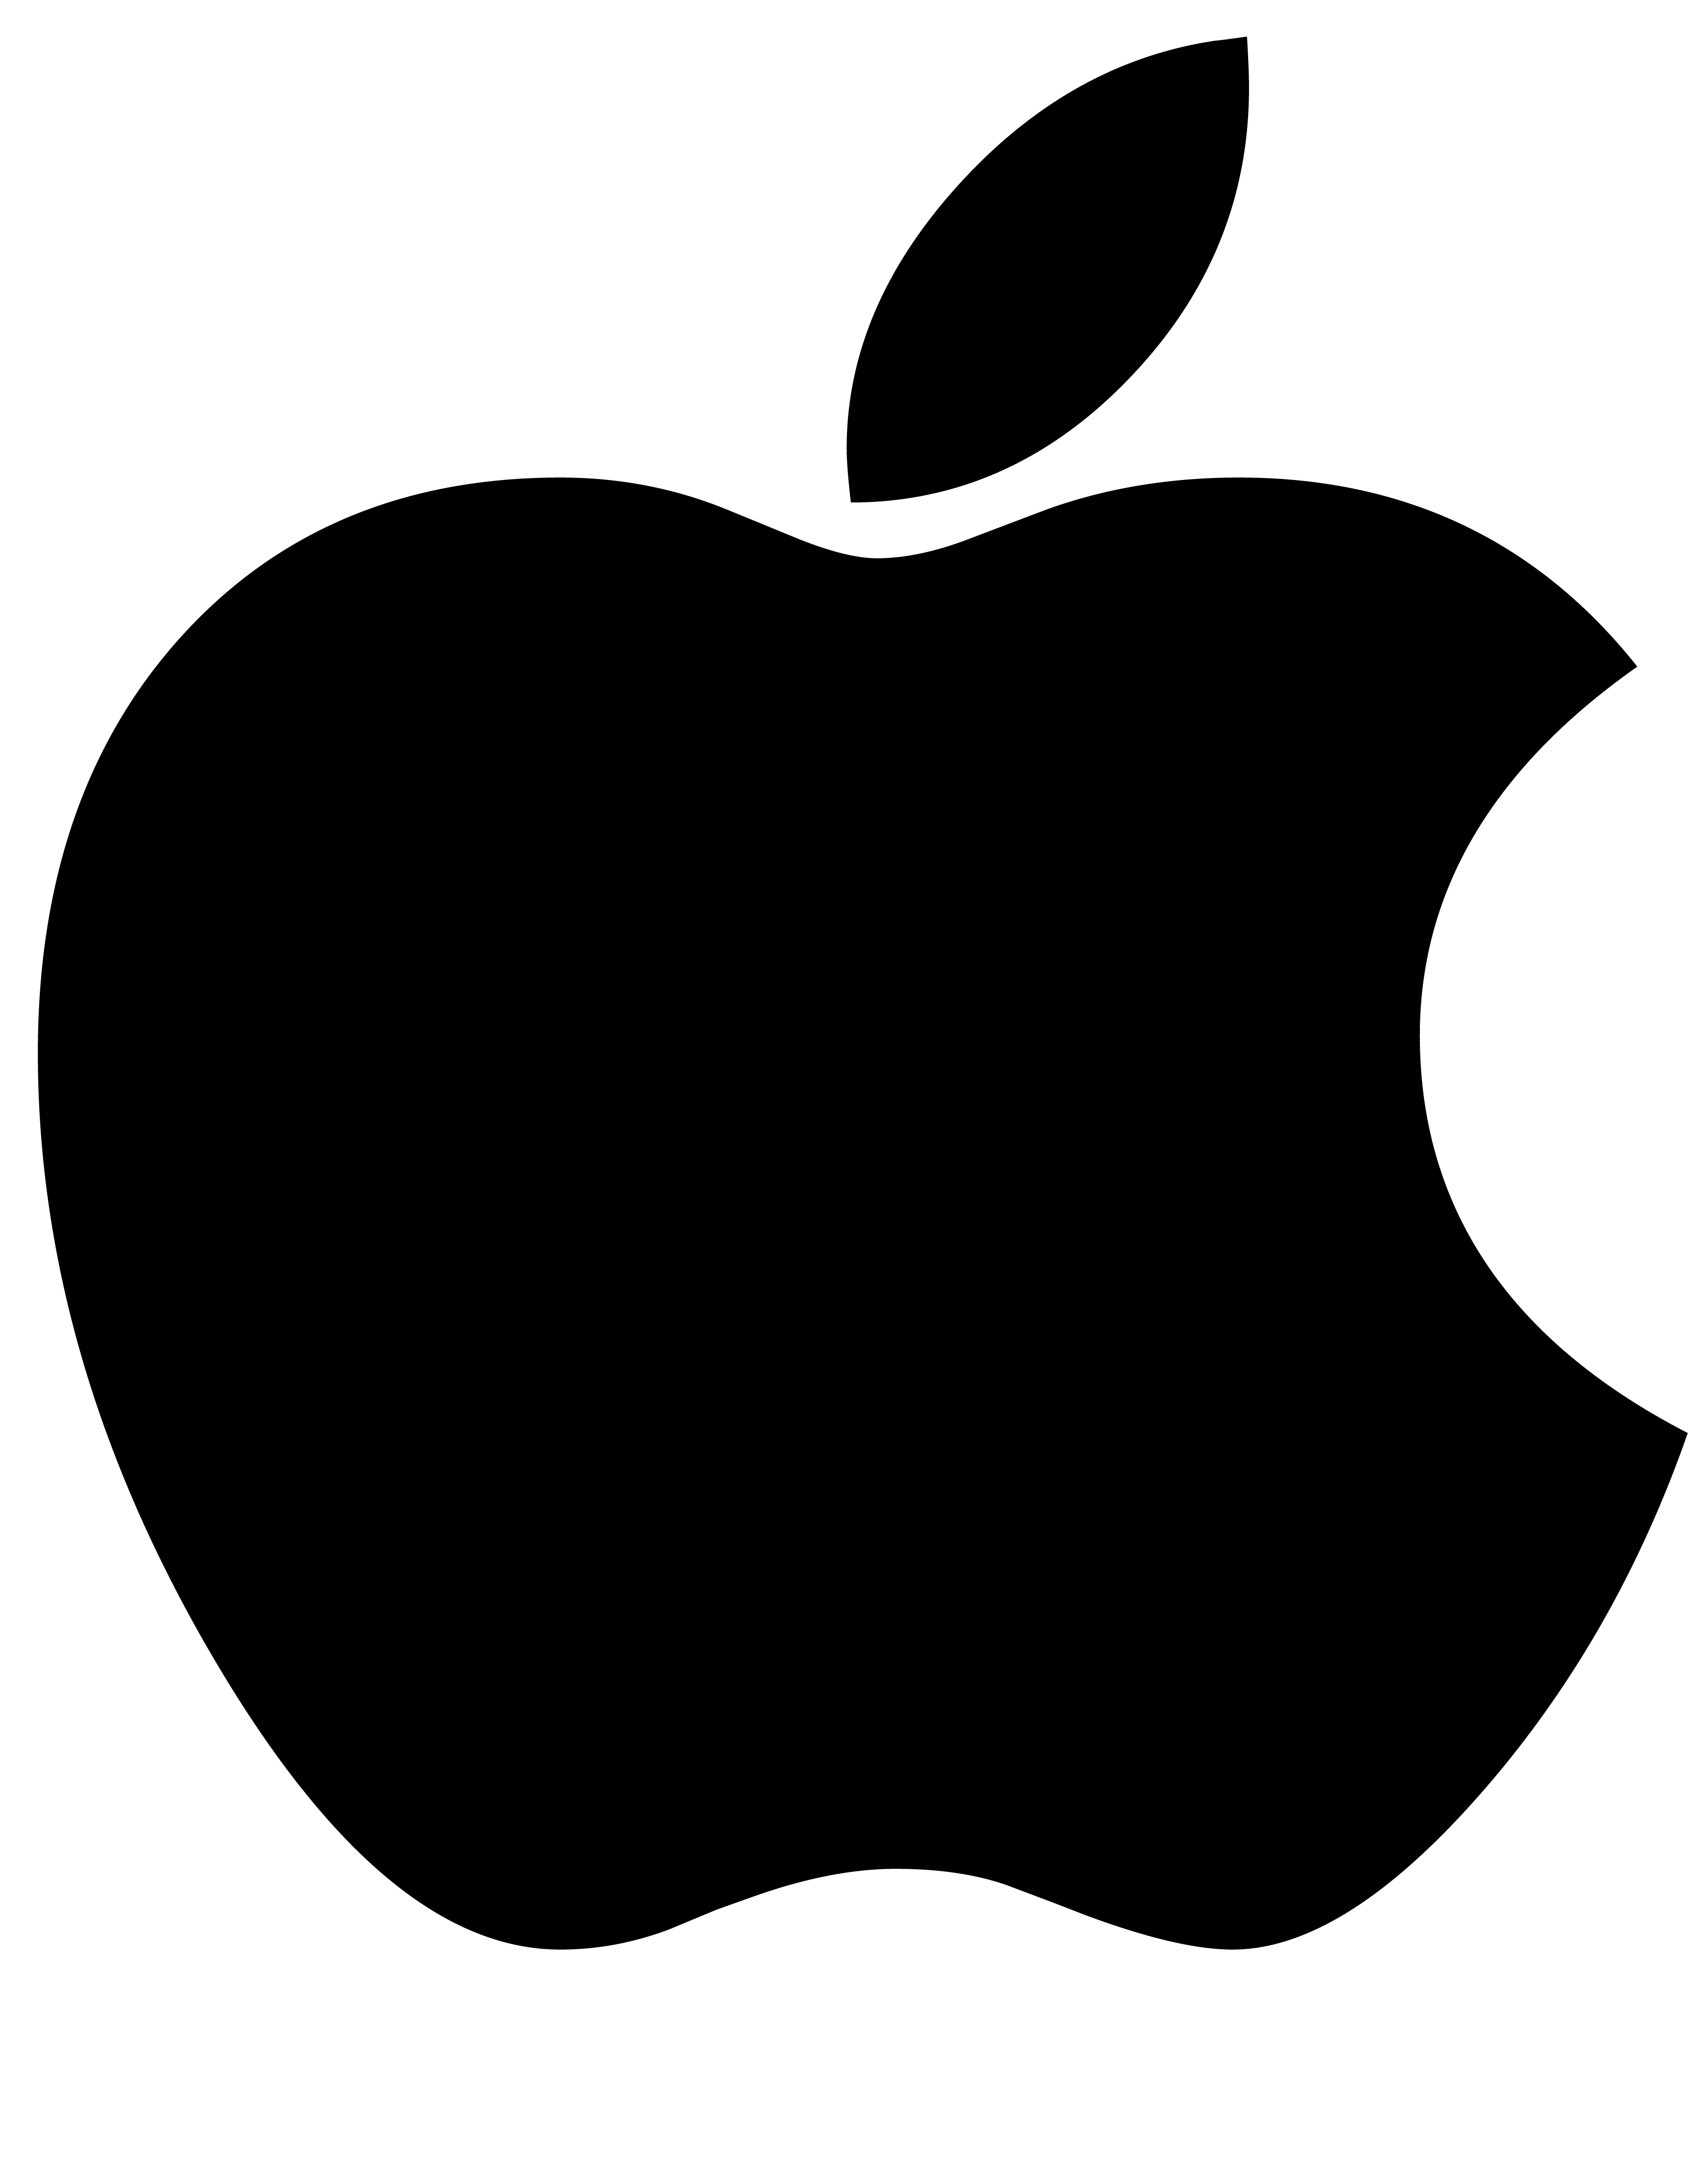 Apple logo clip art